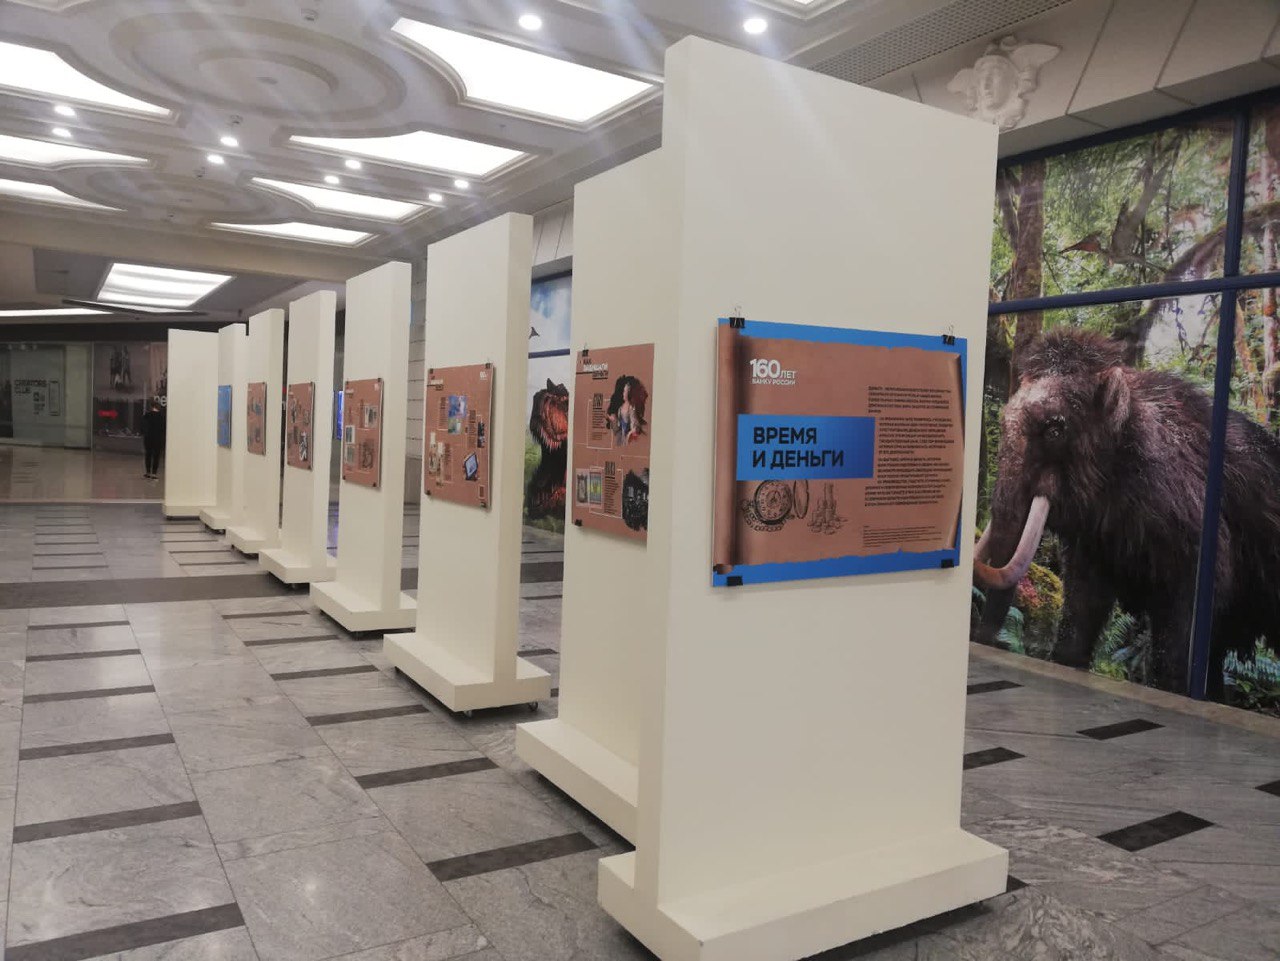 В Воронеже открылась фотовыставка Банка России «Время и деньги»